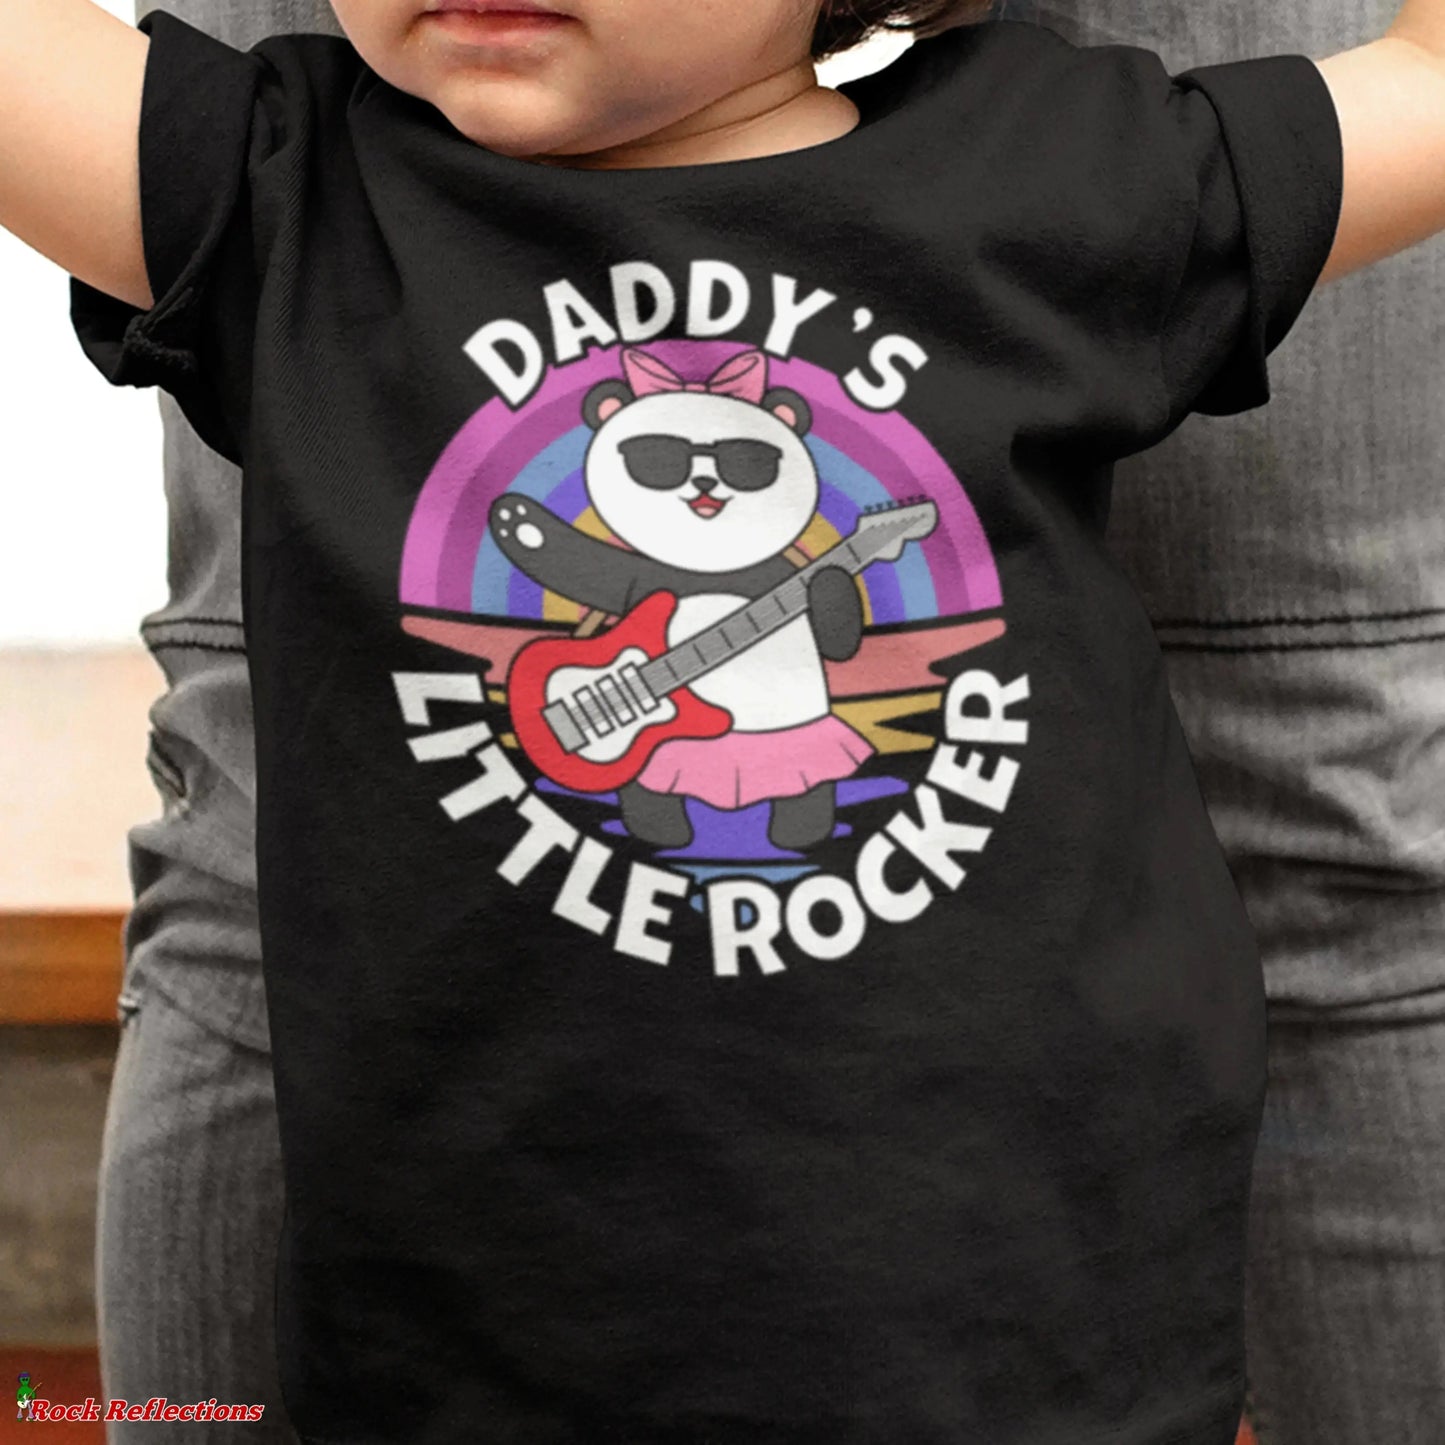 Daddy's Little Rocker Panda SPOD